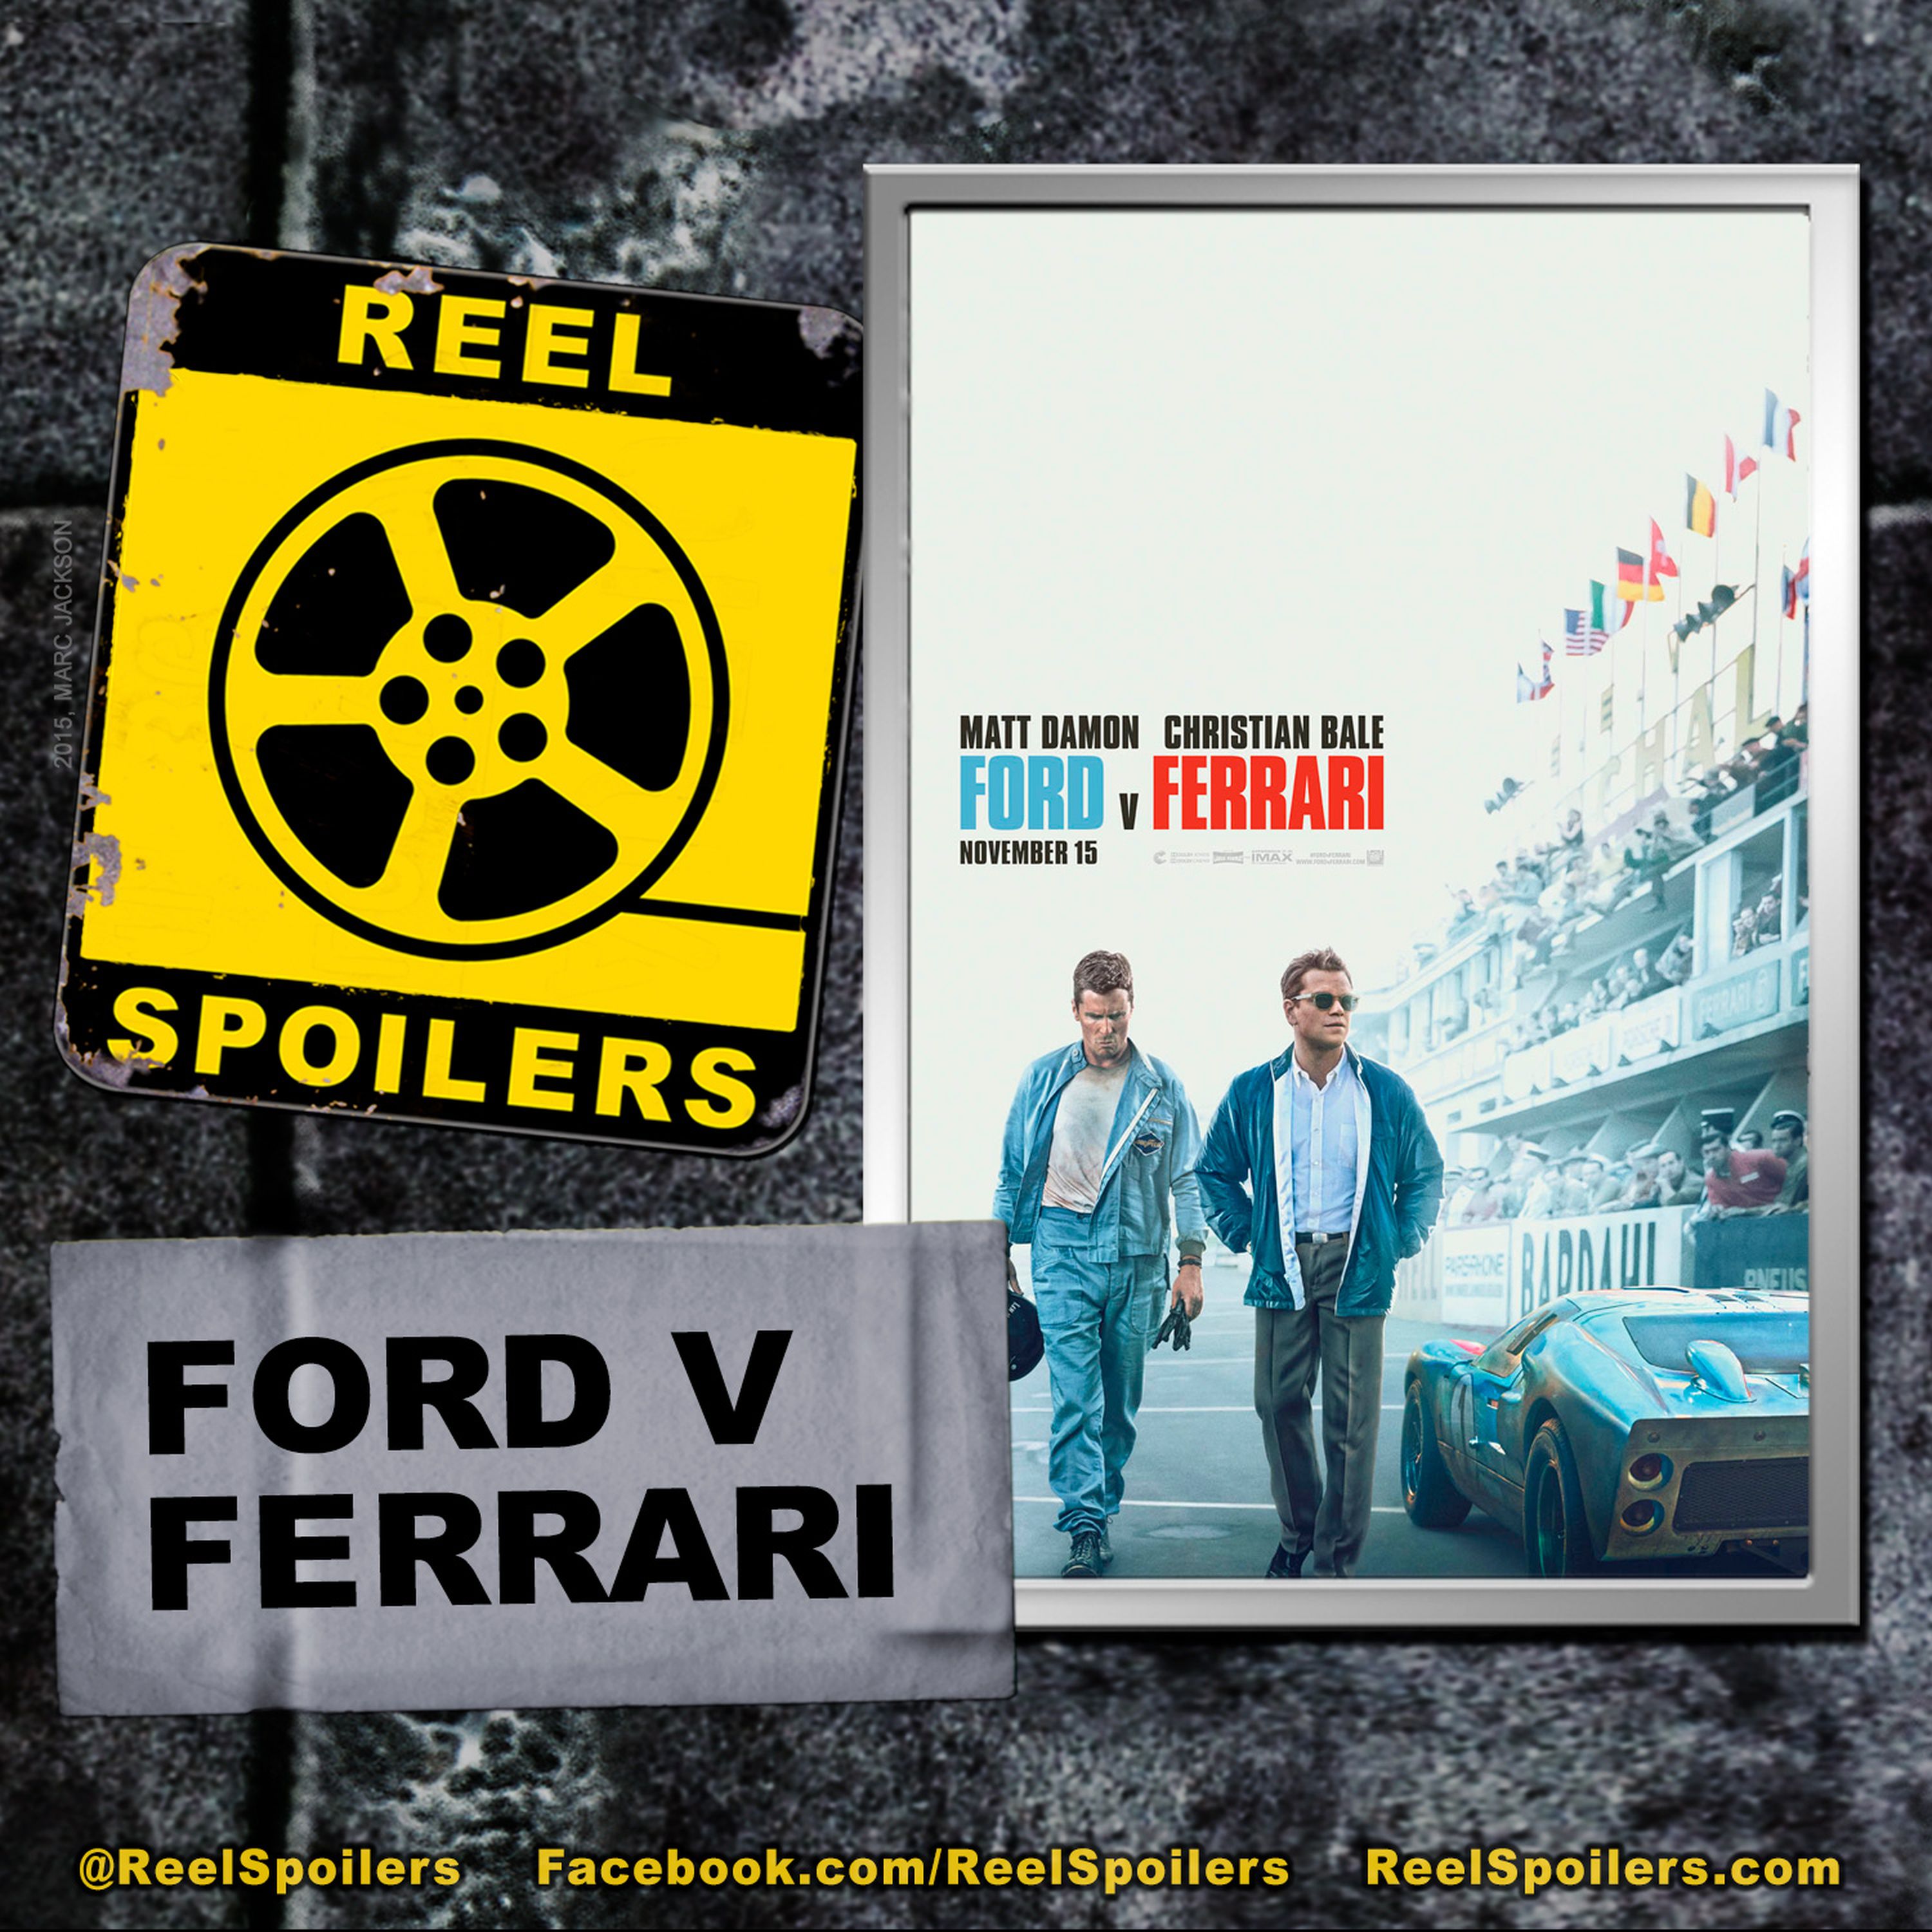 FORD V FERRARI Starring Matt Damon, Christian Bale, Jon Bernthal Image